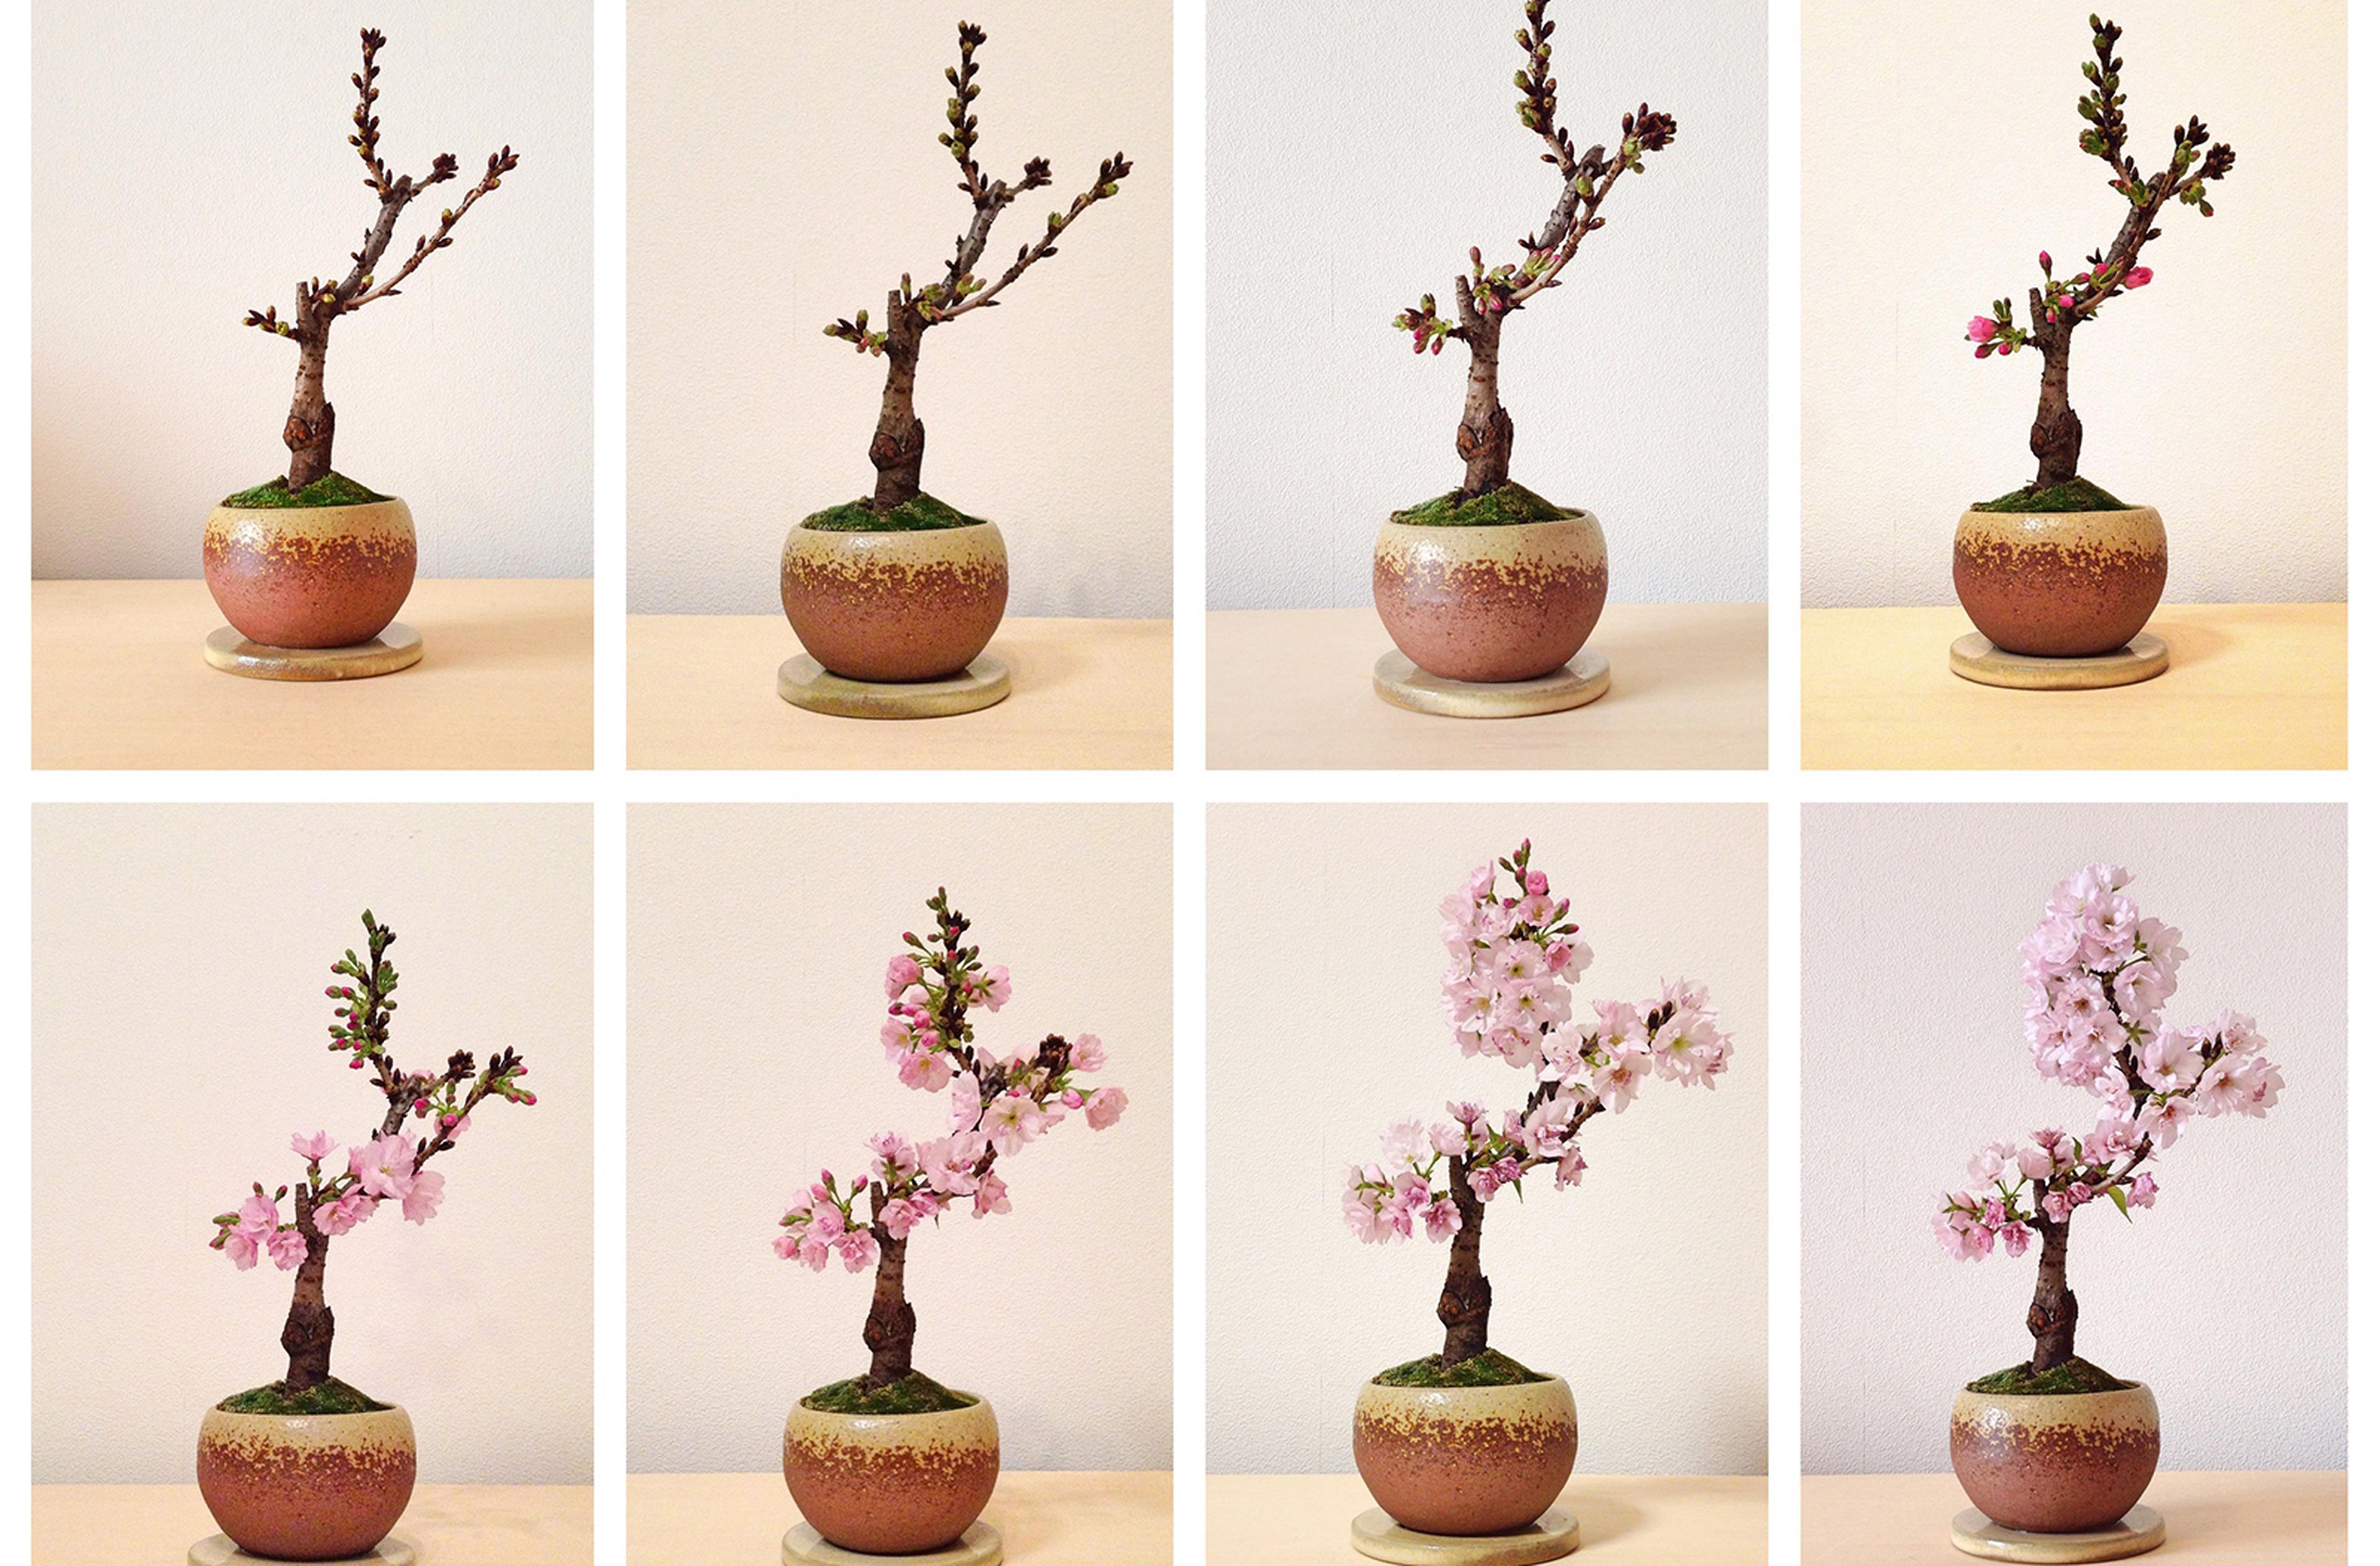 Una guida per imparare a curare un bonsai e ottenere piante bellissime con alcuni consigli e idee